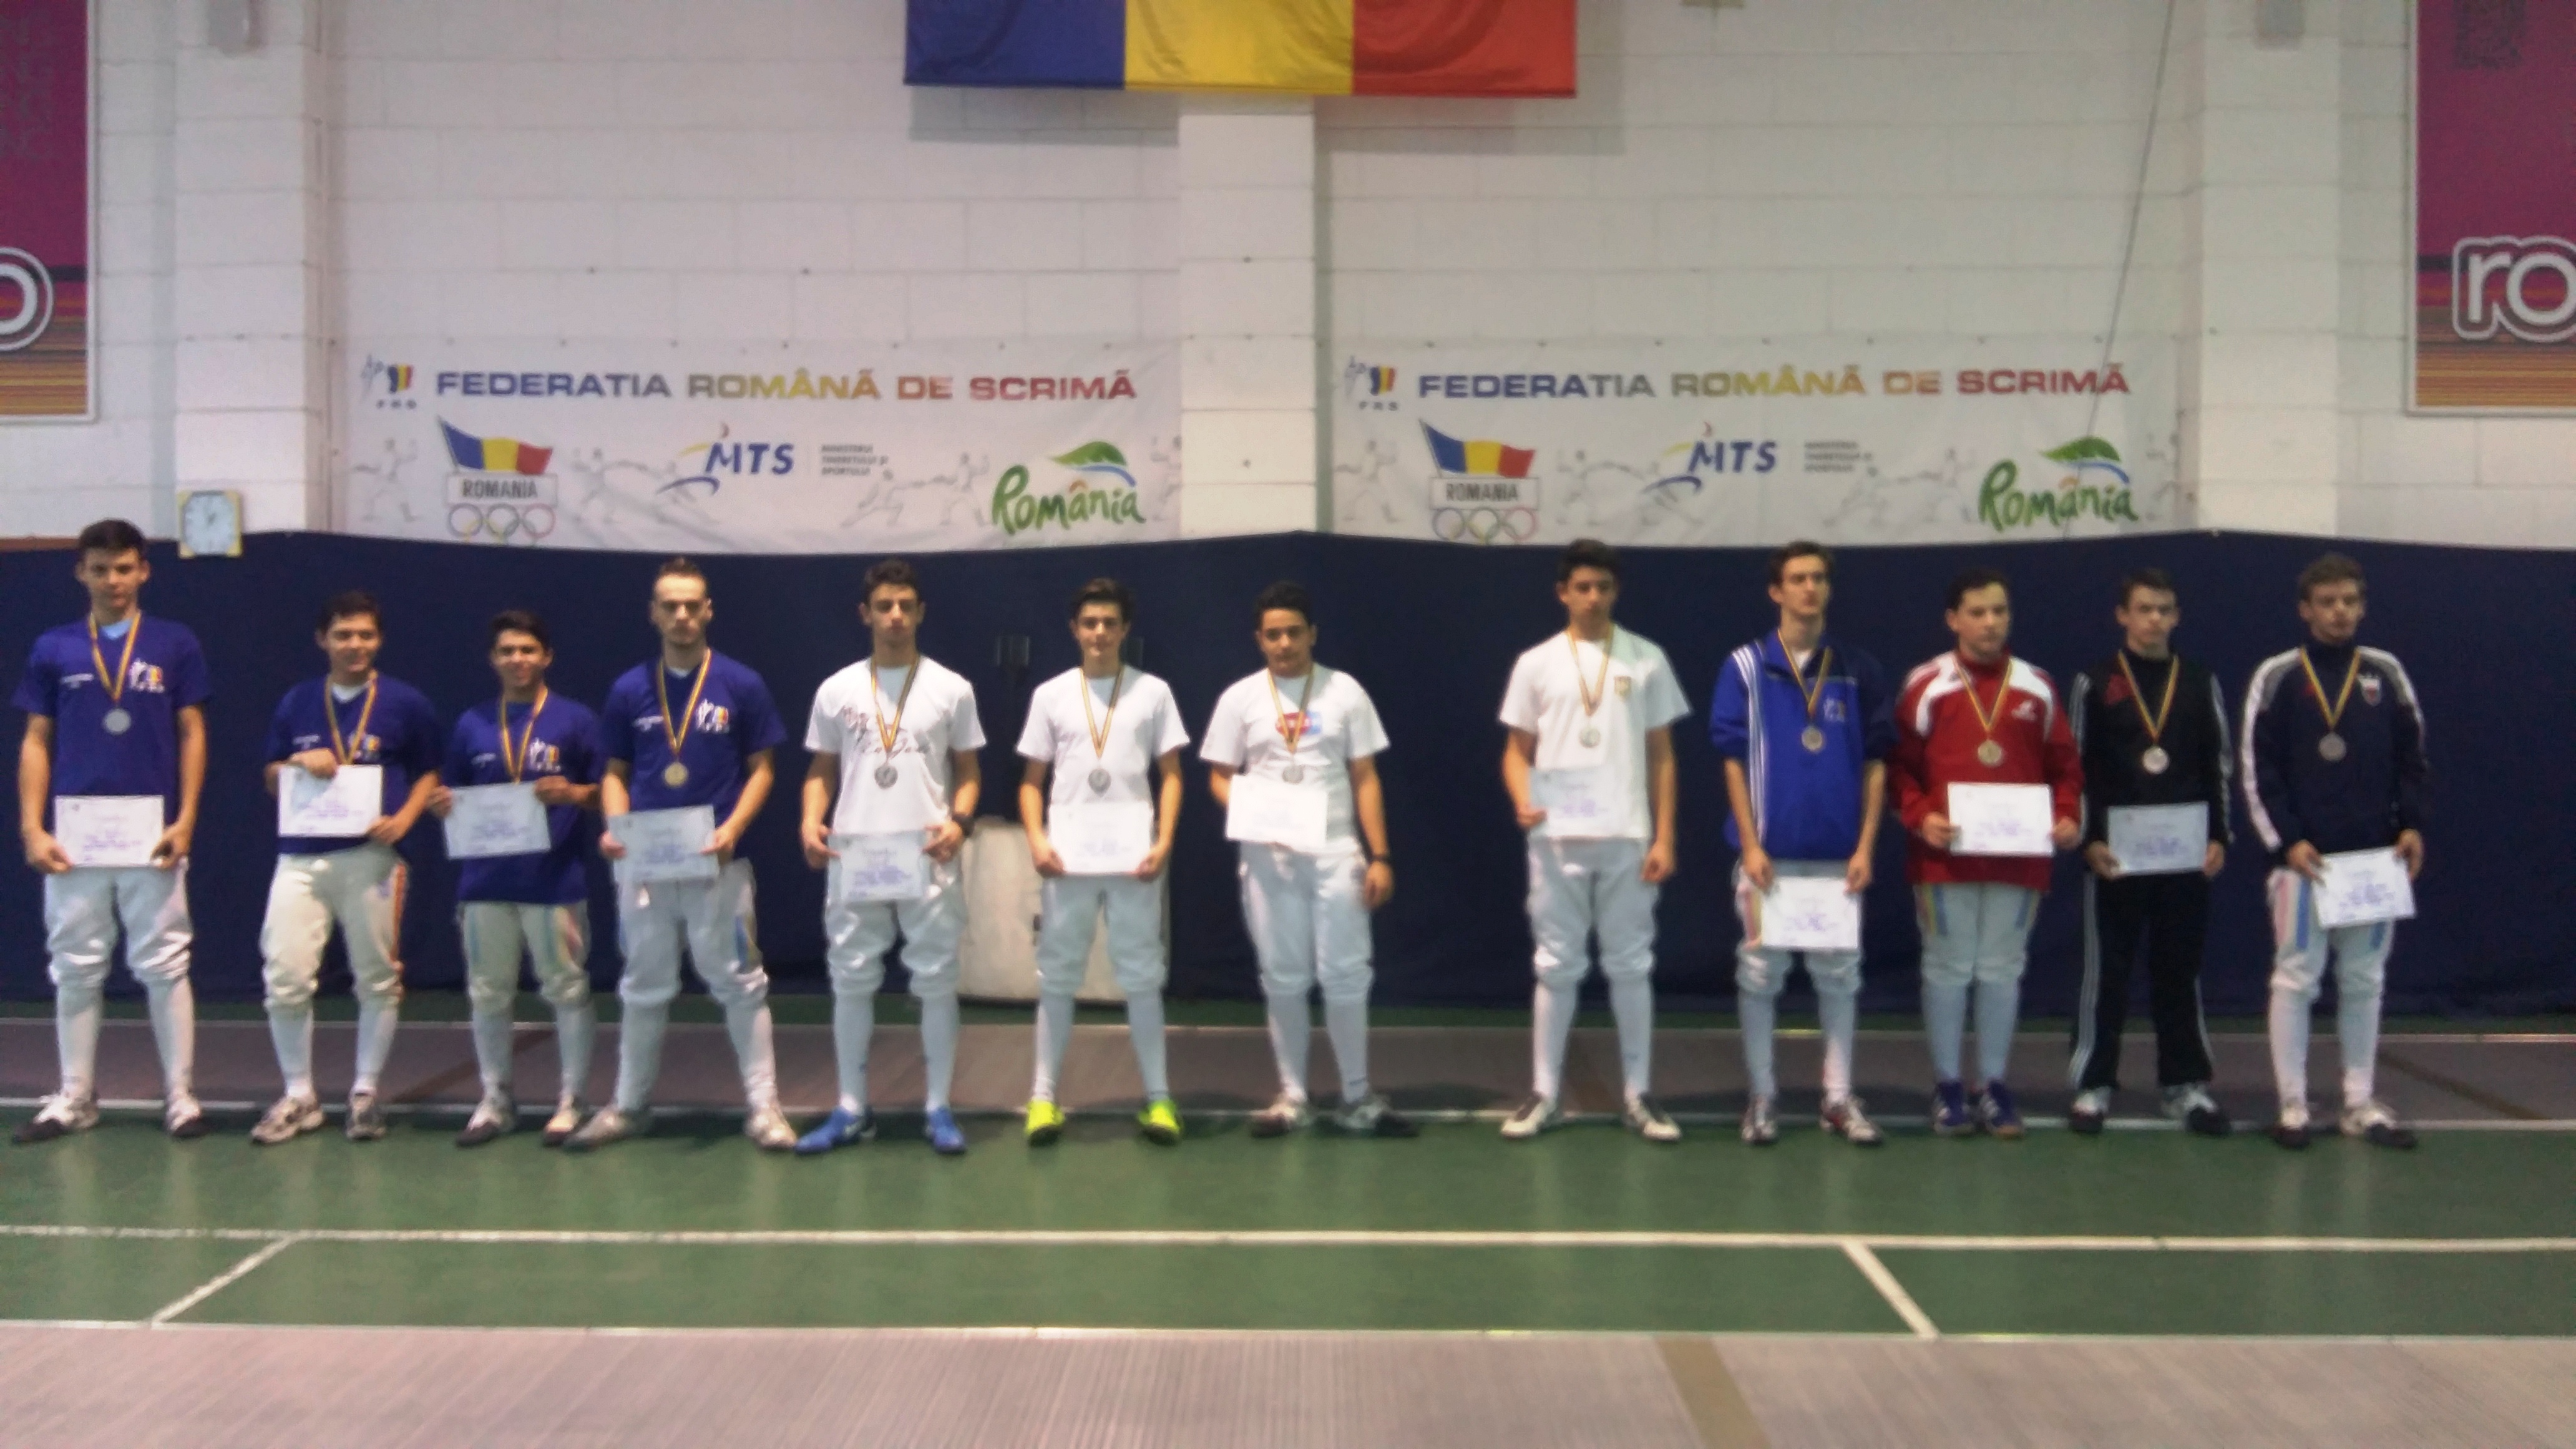 LPS Craiova2 a cucerit medaliile de aur la Campionatul Național de spadă cadeți, în proba masculină pe echipe